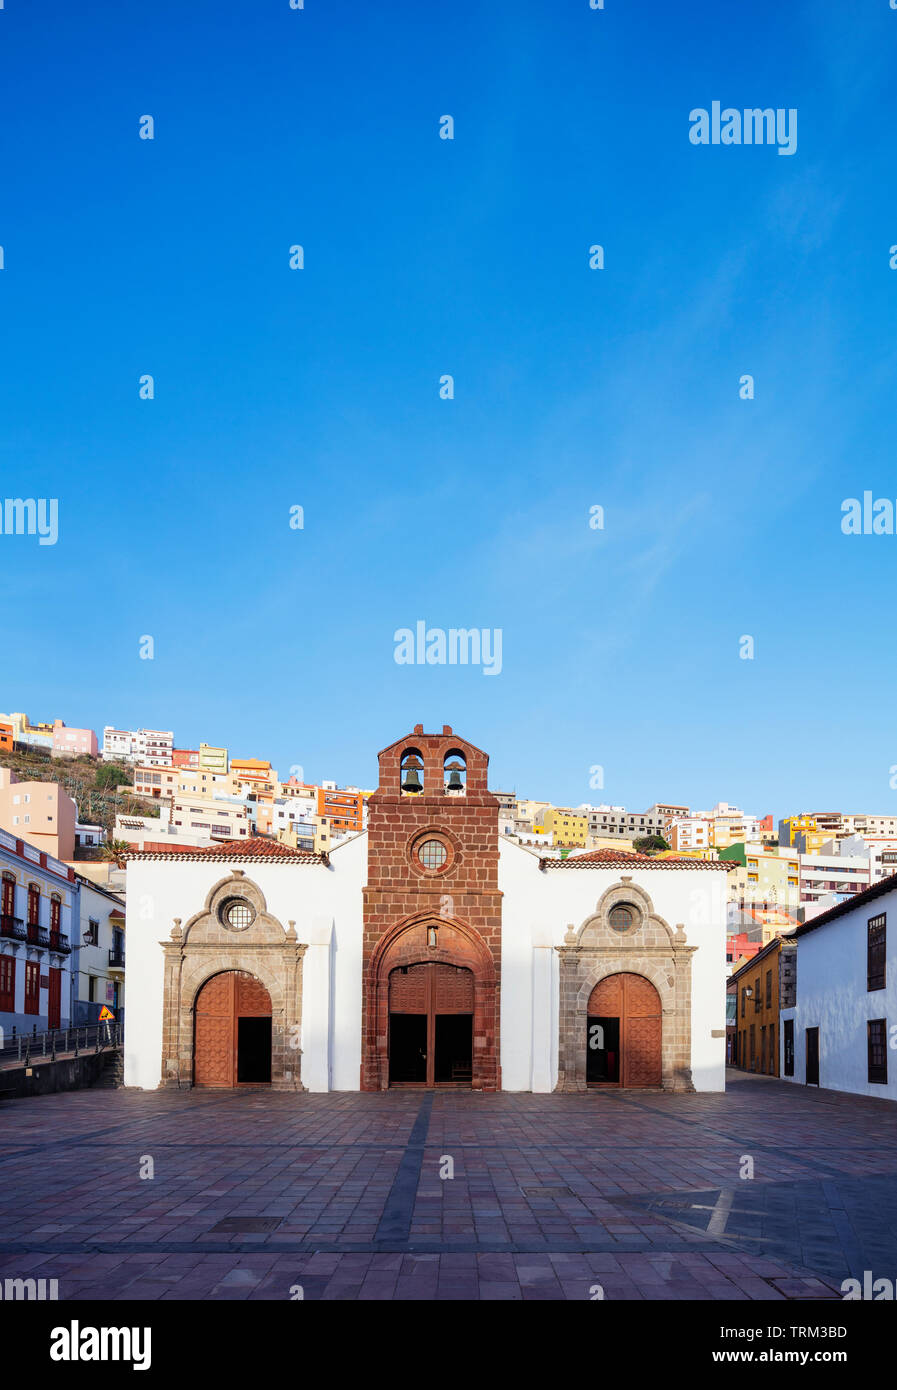 Europe, Spain, Canary Islands, La Gomera, Unesco Biosphere site, San Sebastian de la Gomera town, Iglesia de la Asuncion (church of the ascension) Stock Photo